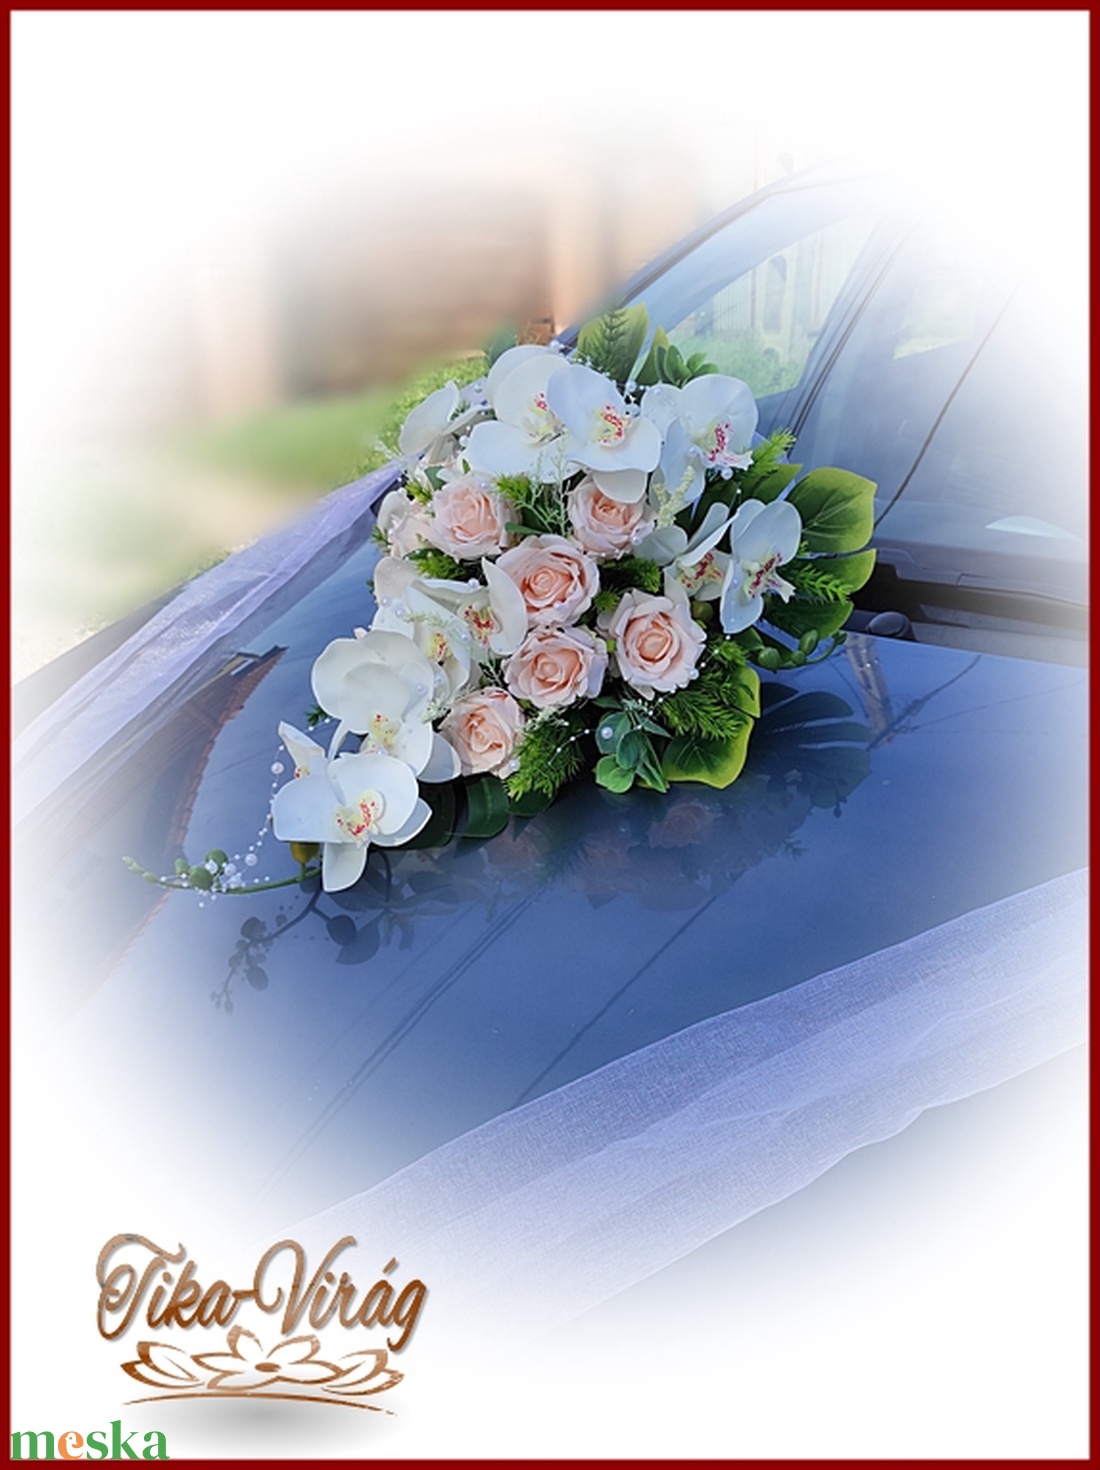 Puder rózsás-fehér orchideás örök autódísz - esküvő - dekoráció - helyszíni dekor - Meska.hu